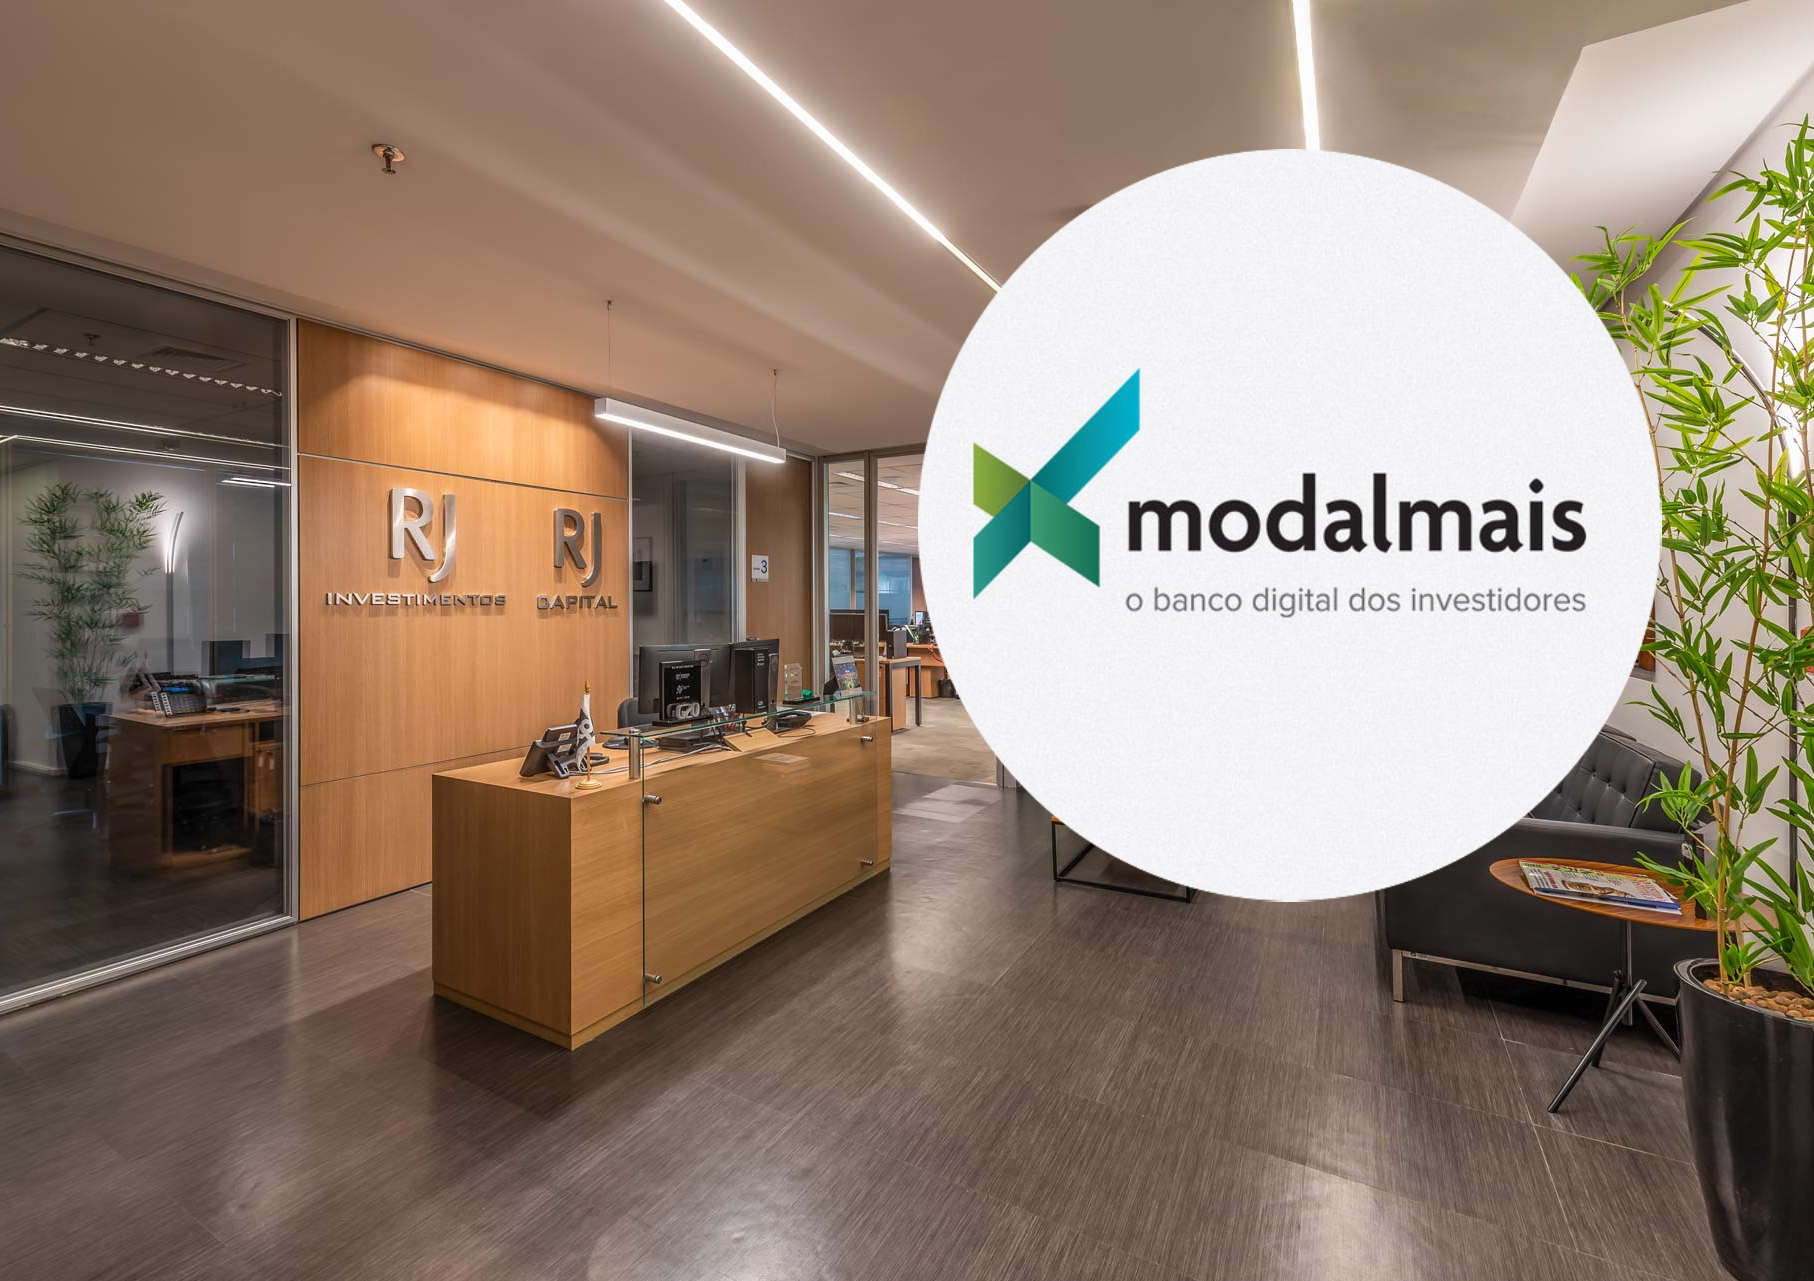 RJ Investimentos capta R$ 2 bilhões sob assessoria após migrar para o Modalmais (MODL11)